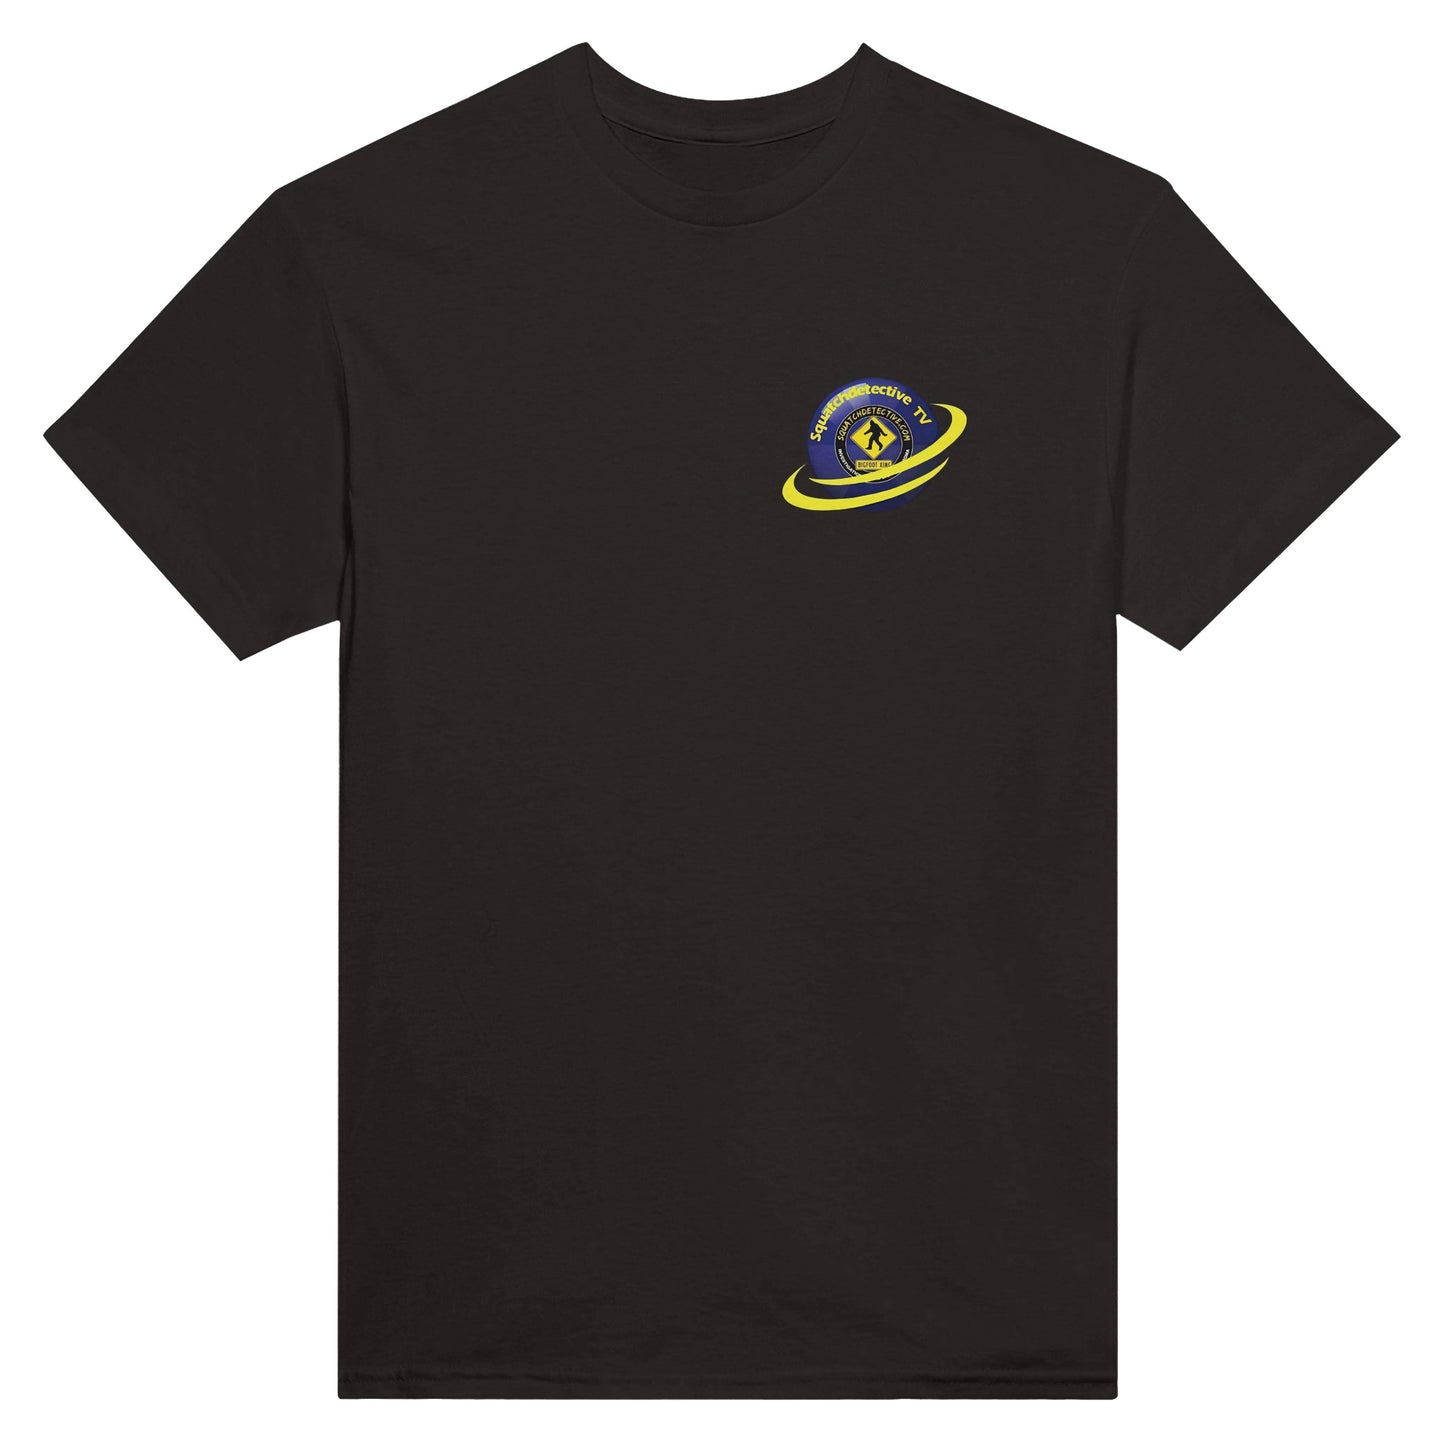 Squatch-D TV - Heavyweight Unisex Crewneck T-shirt